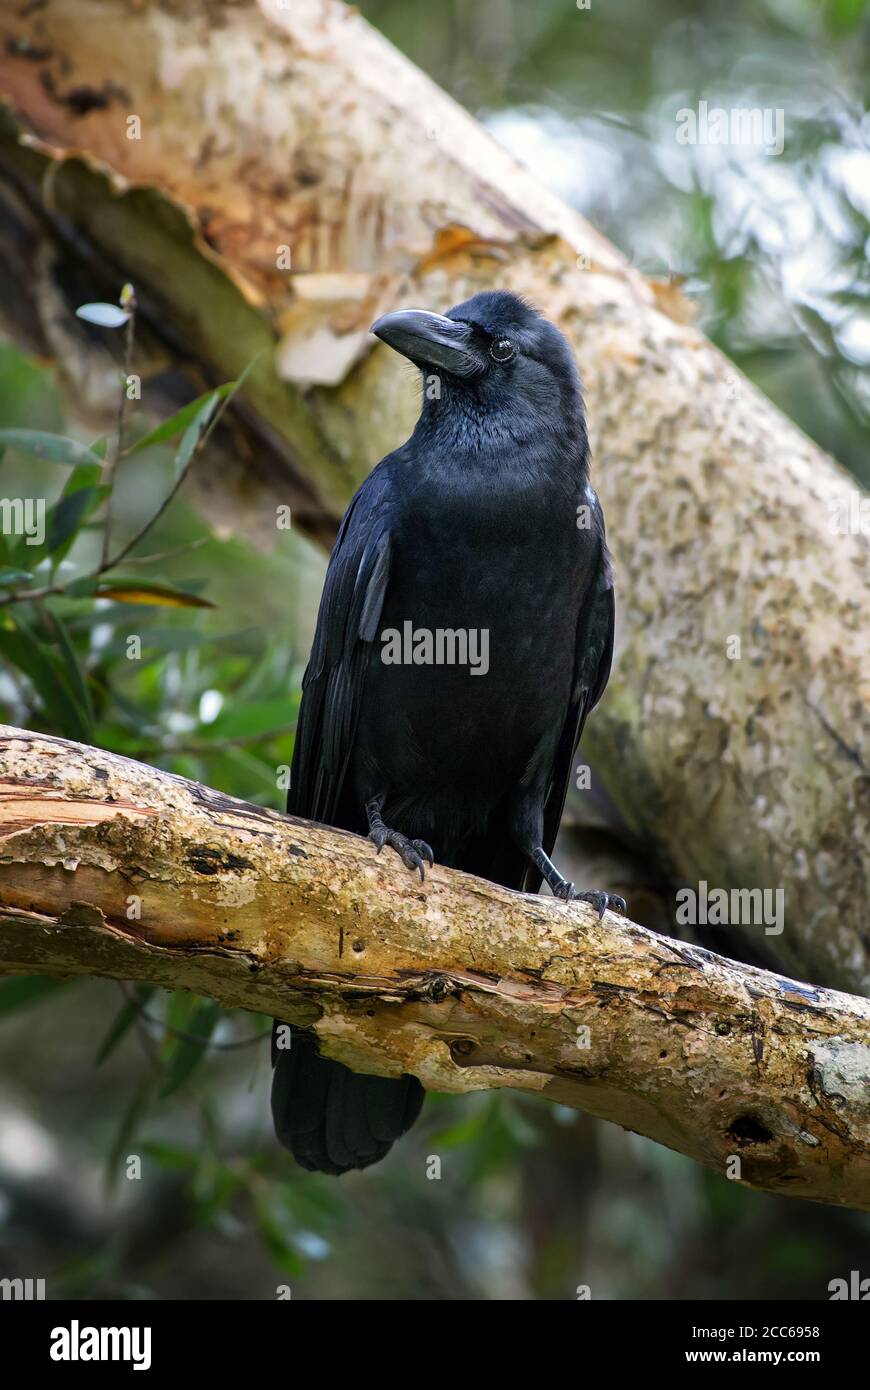 Großschnabelkrähe - Corvus macrorhynchos, große schwarze Krähe aus asiatischen Wäldern und Wäldern, Sri Lanka. Stockfoto